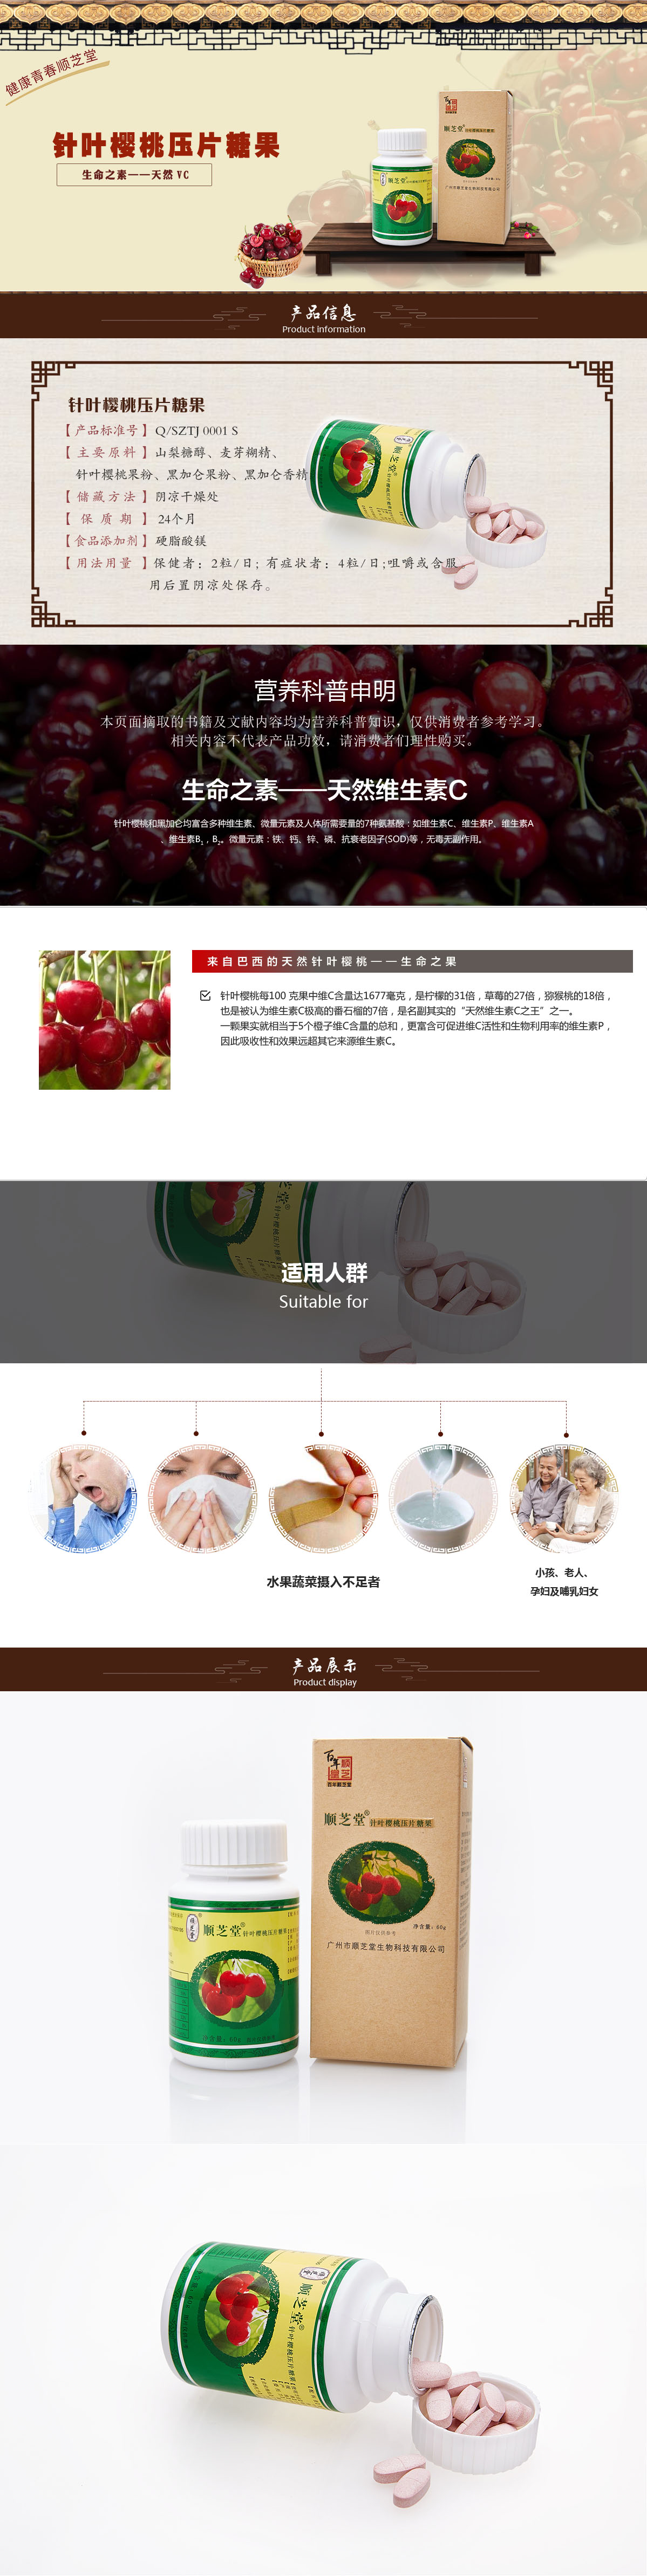 健康食品-针叶樱桃.jpg